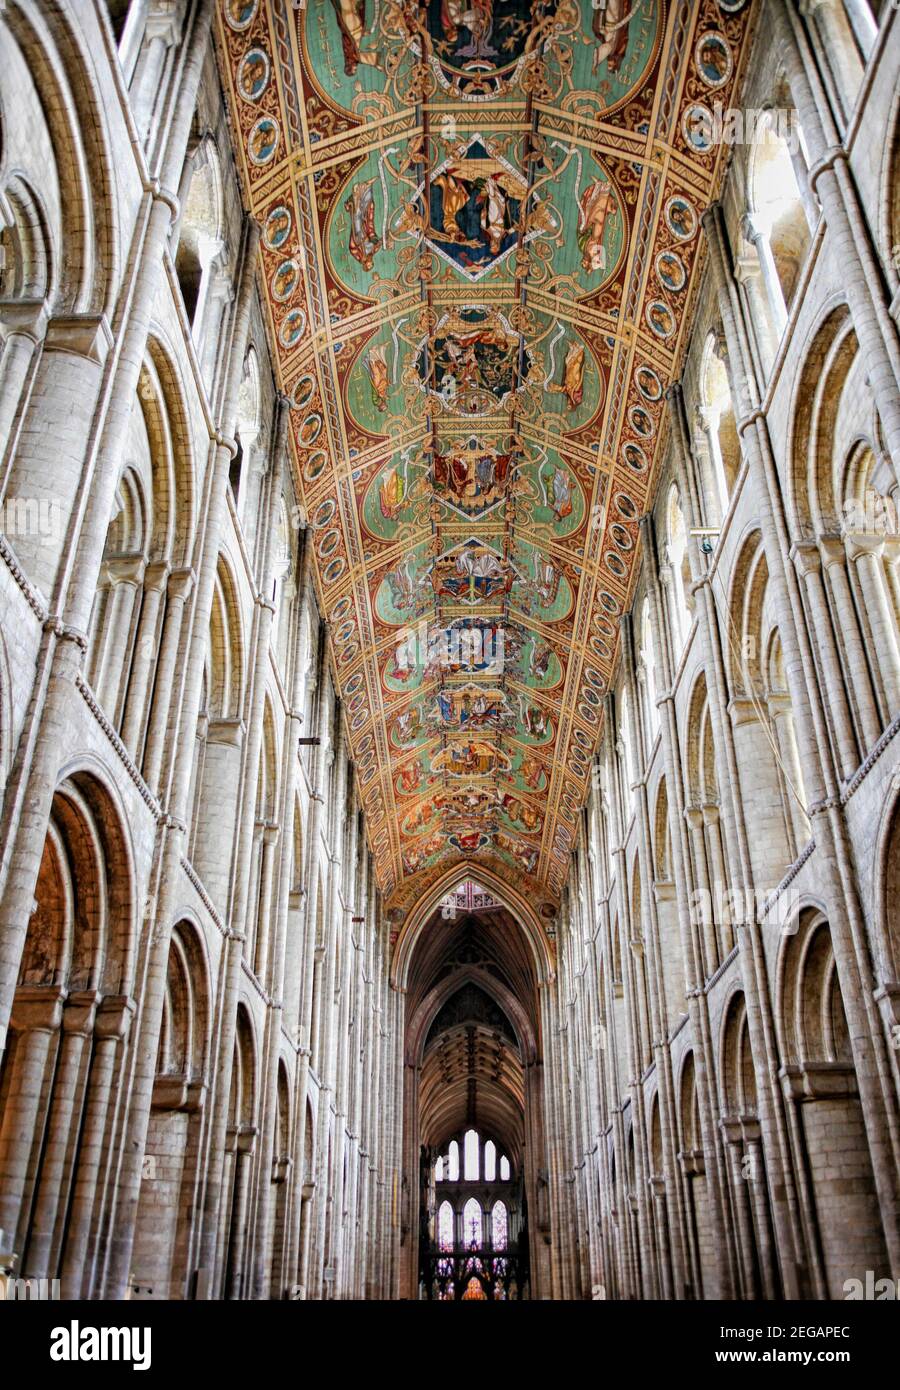 Magnifique plafond en bois sculpté et peint de la cathédrale d'Ely à Ely, Cambridgeshire, Angleterre Banque D'Images